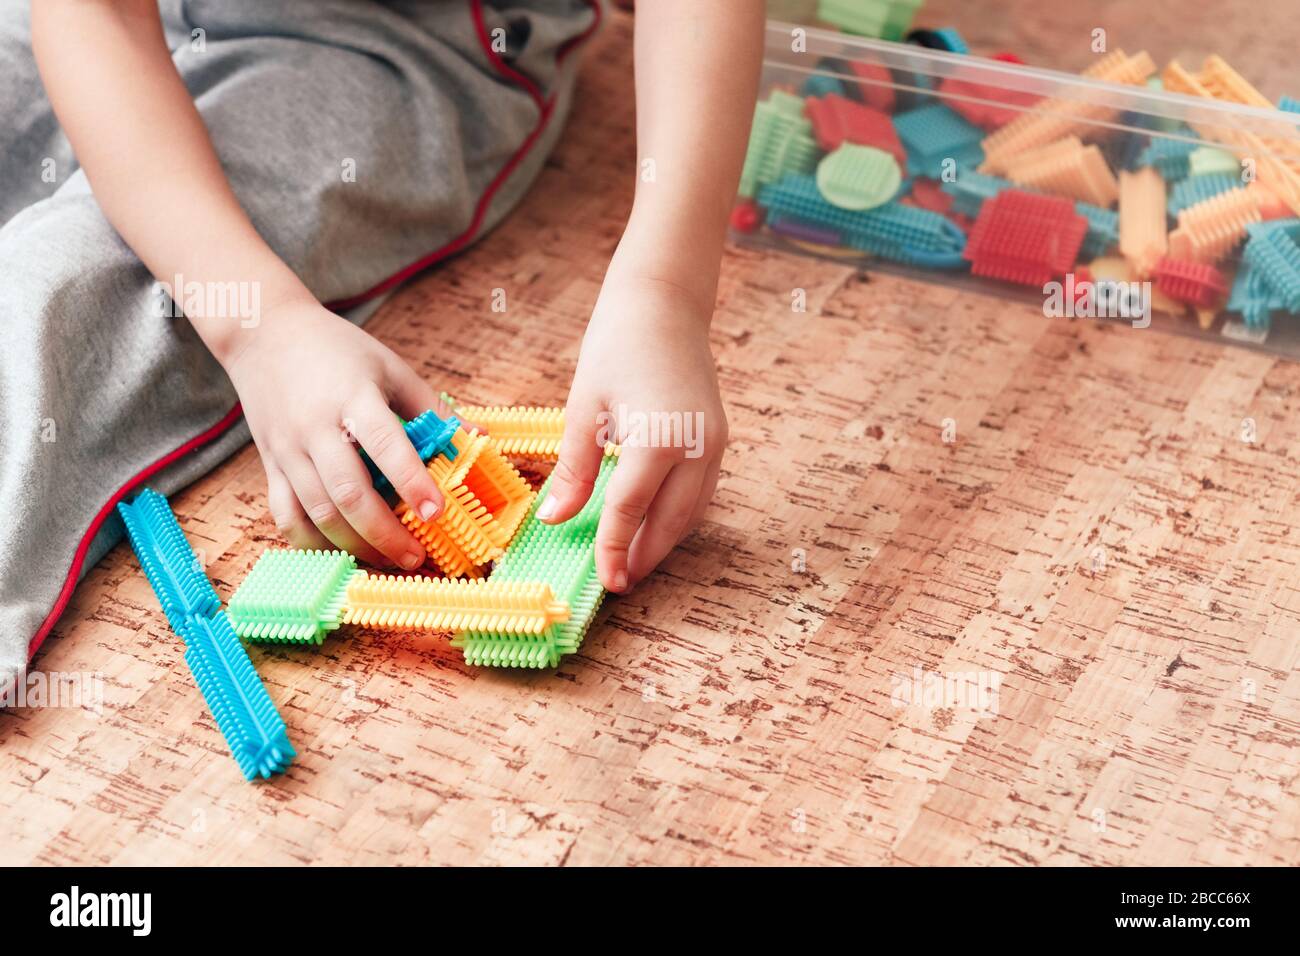 Eine Nahaufnahme eines Kindes, das mit einem Nadelkonstruktor spielt, der die Phantasie fördert und seine Fingerspitzen massiert, um feine motorische Fähigkeiten zu entwickeln. Stockfoto